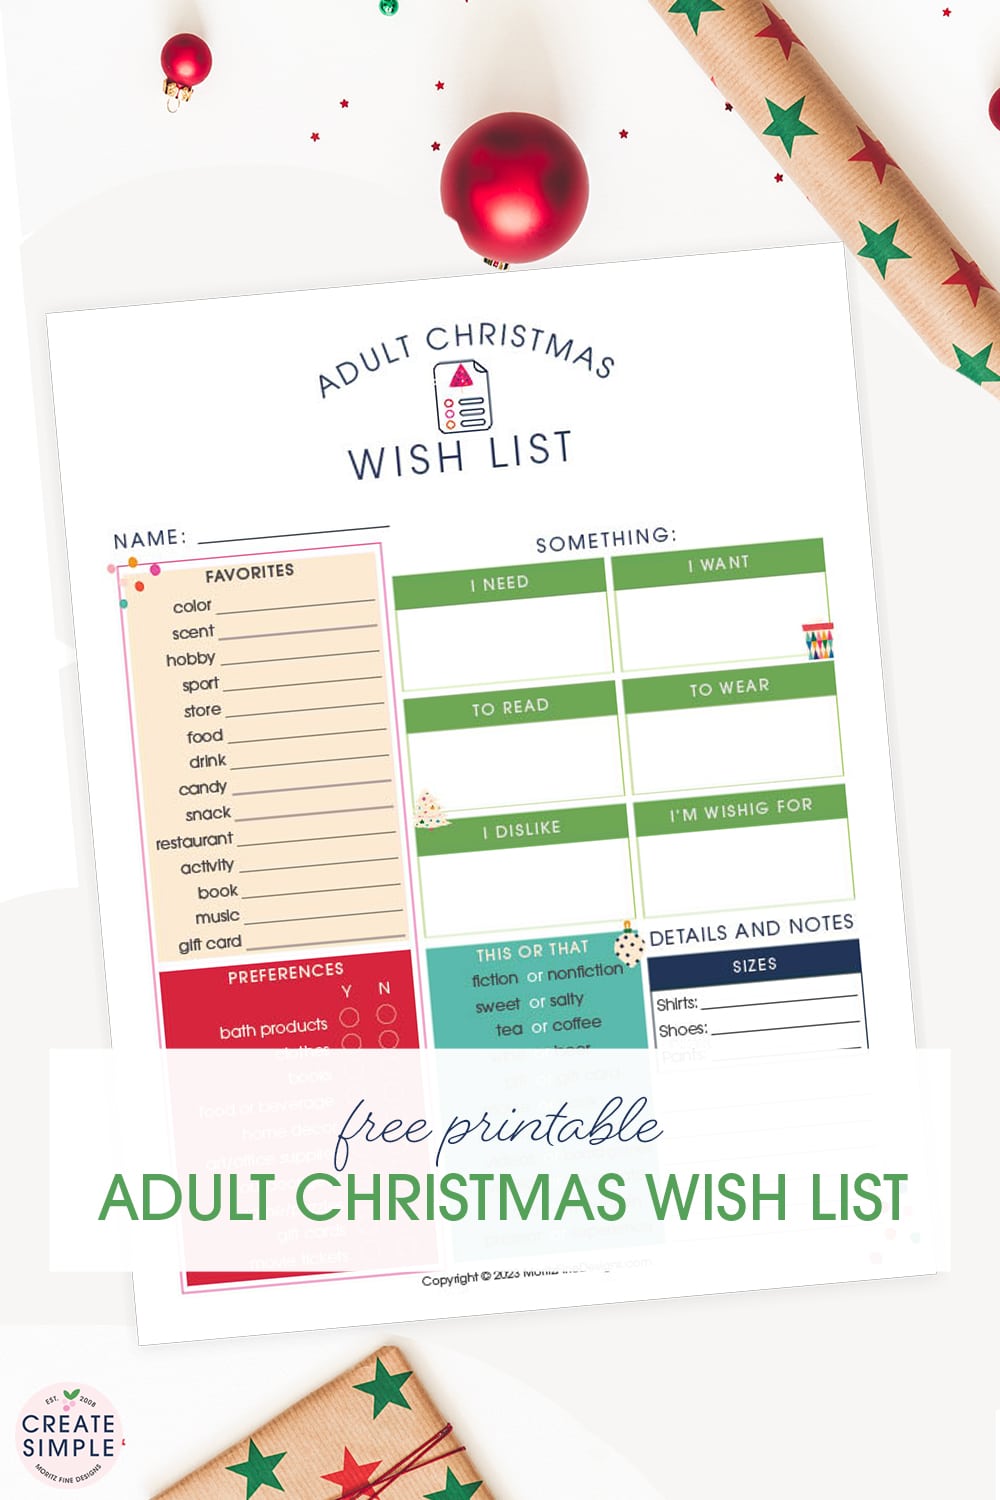 Make Christmas Easy, Use the Adult Christmas Wish List